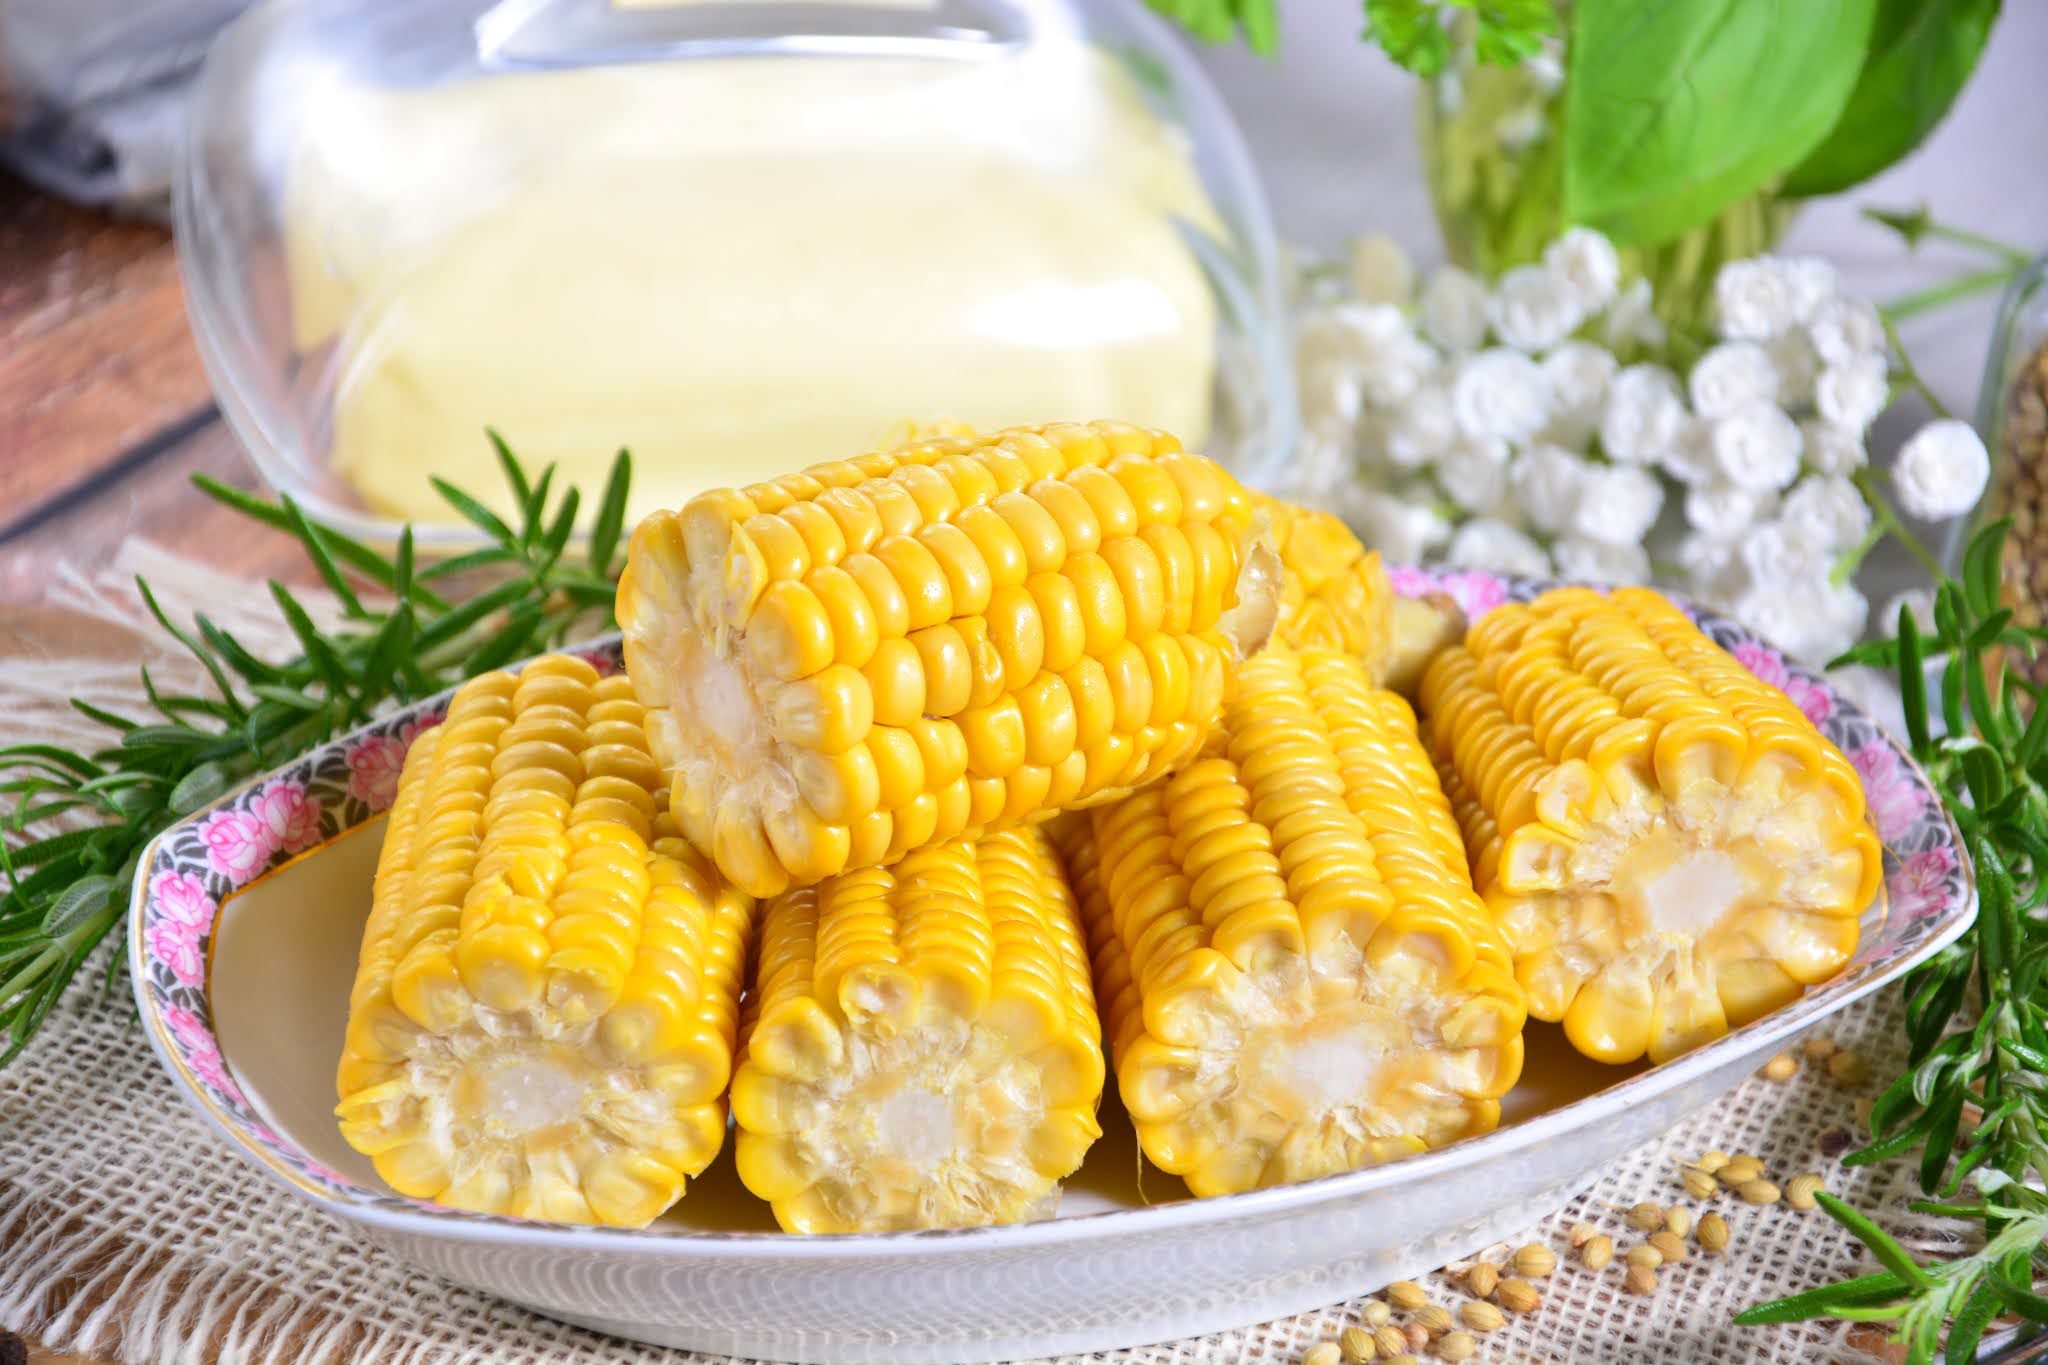 Kukurydza gotowana w kolbach z masłem czosnkowym